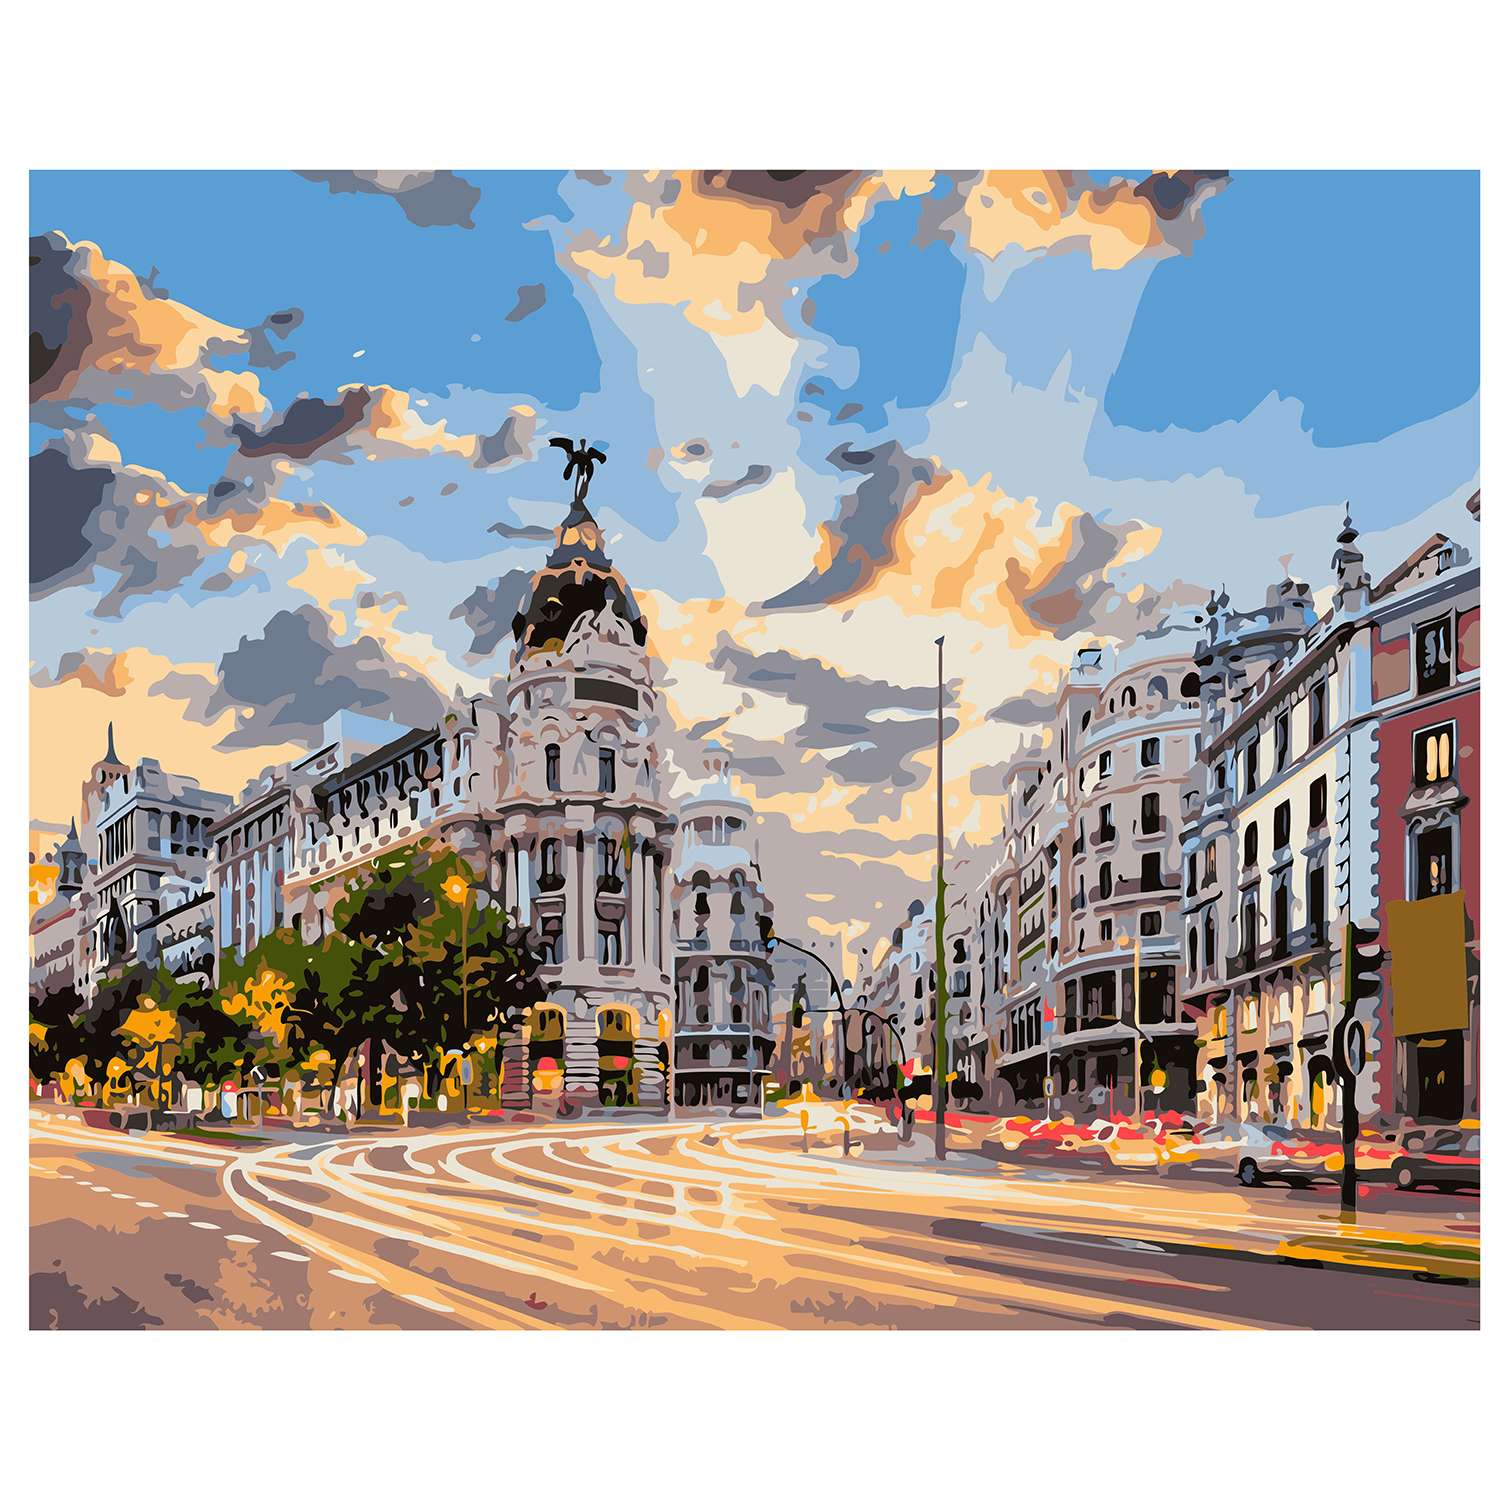 Картина по номерам Рыжий кот Мадрид Испания Х-6577 - фото 1